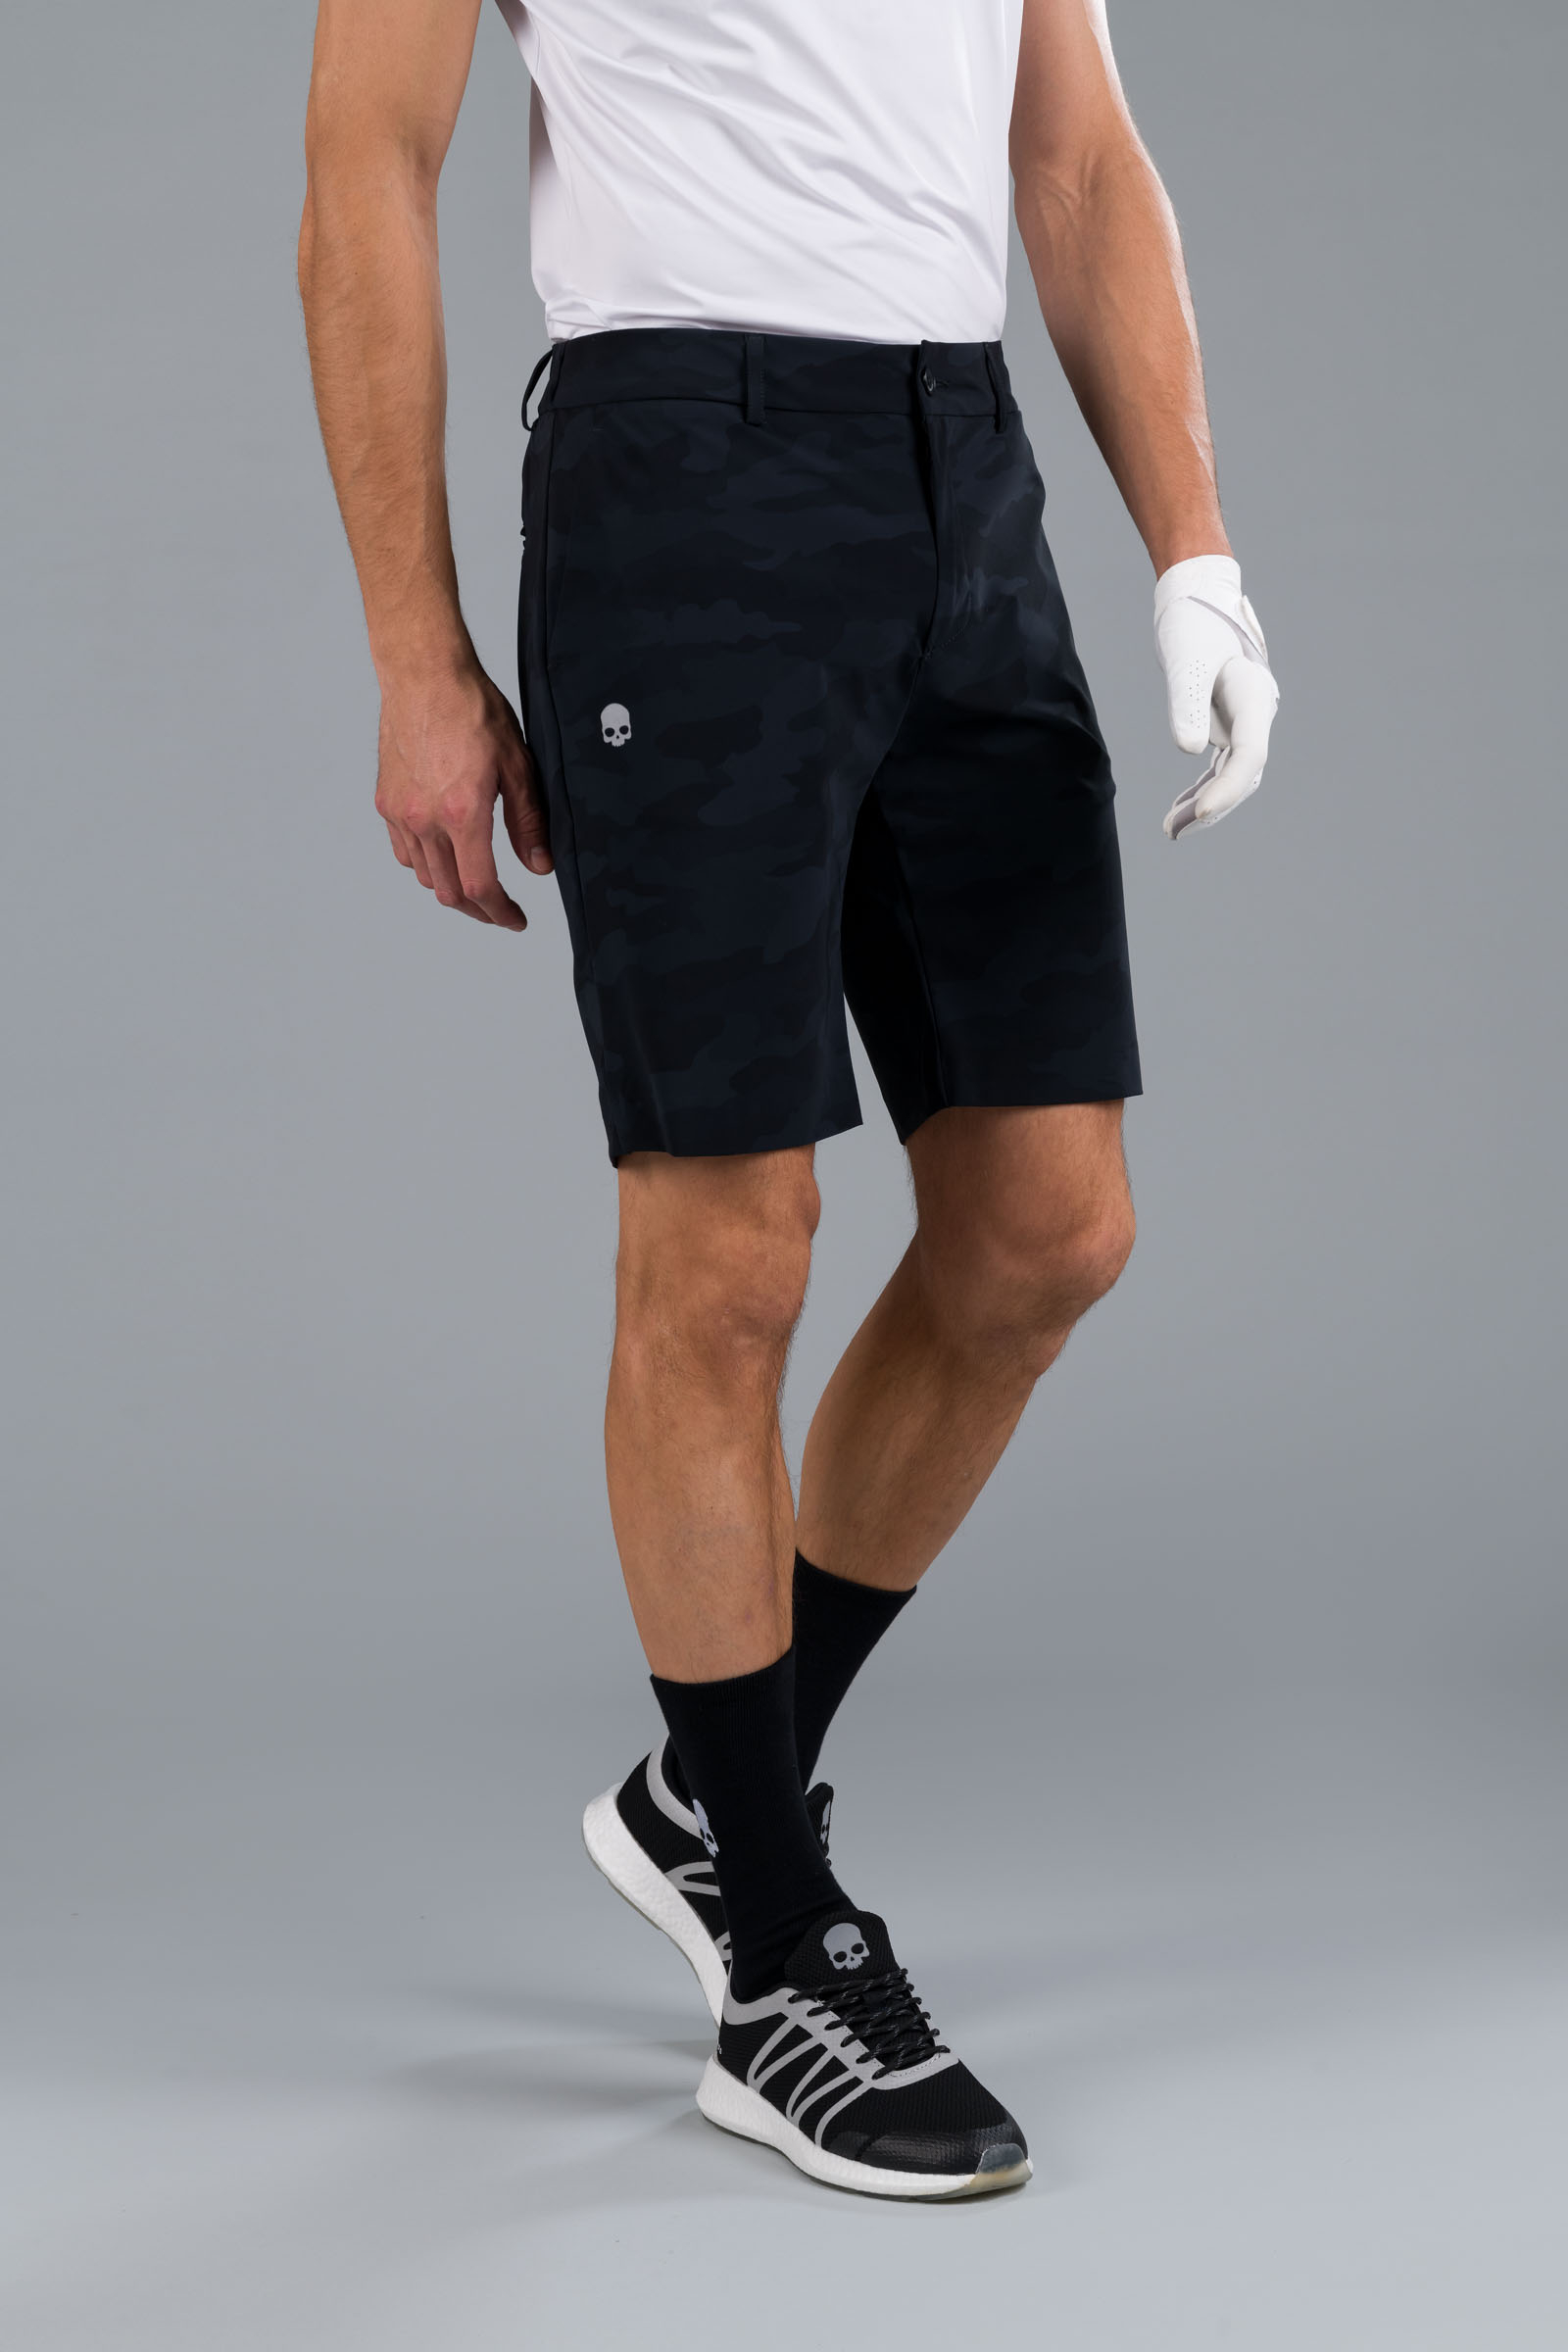 GOLF SHORTS - Abbigliamento - Abbigliamento sportivo | Hydrogen